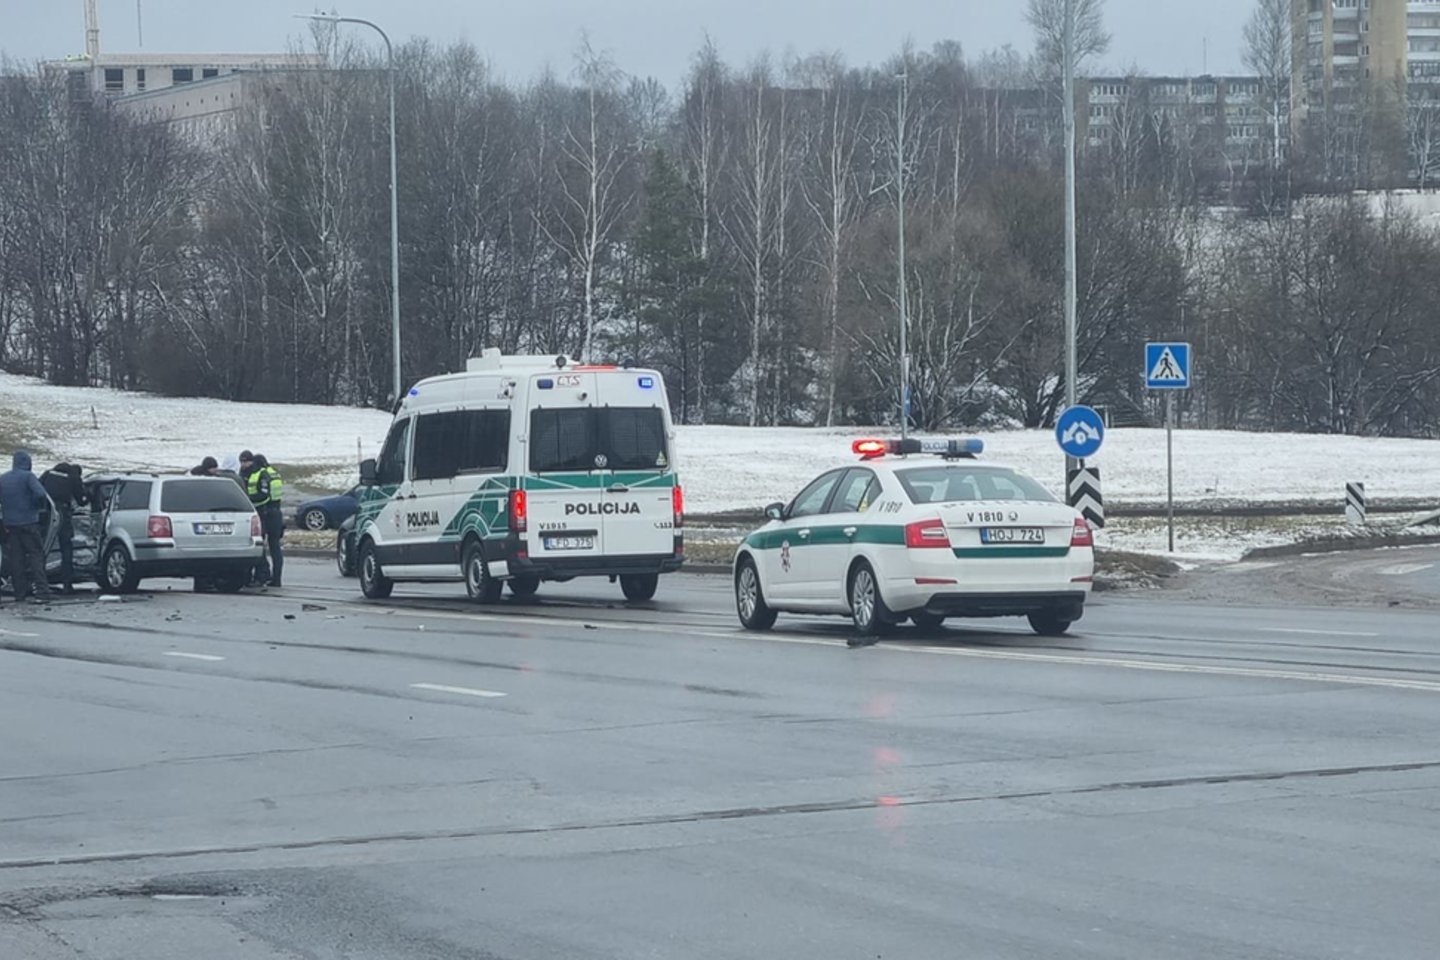  Iš Šalčininkų į Vilnių atvažiavę du girti vyrai sukėlė avariją, policijai kilo klausimų dėl vagystės.<br> Facebbok/Igorio IS nuotr.